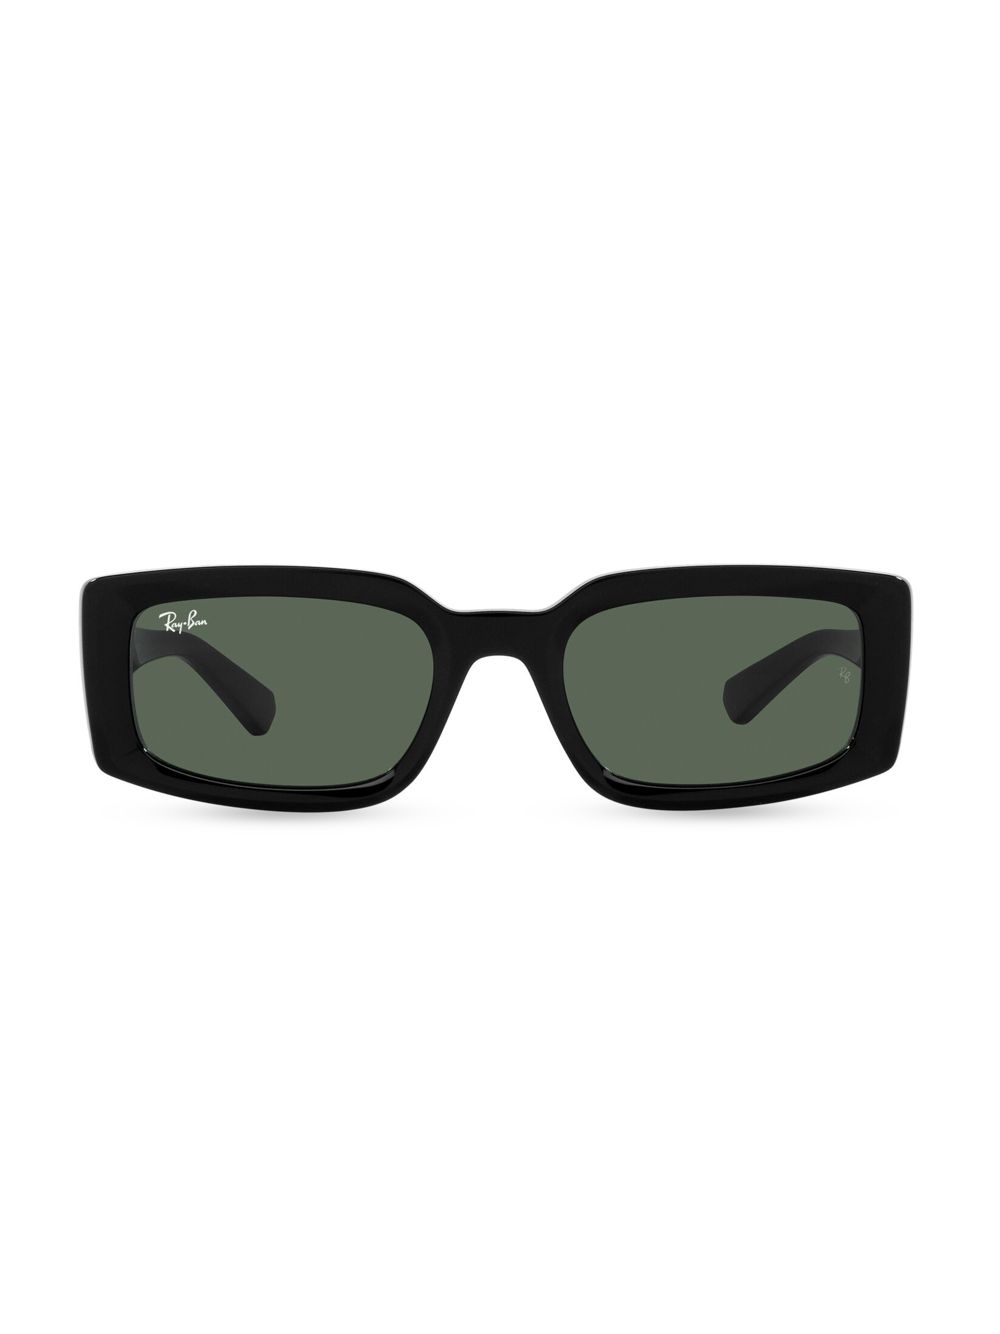 Солнцезащитные очки RB4395 54MM Ray-Ban, черный солнцезащитные очки masao gabrielle 54mm casablanca черный